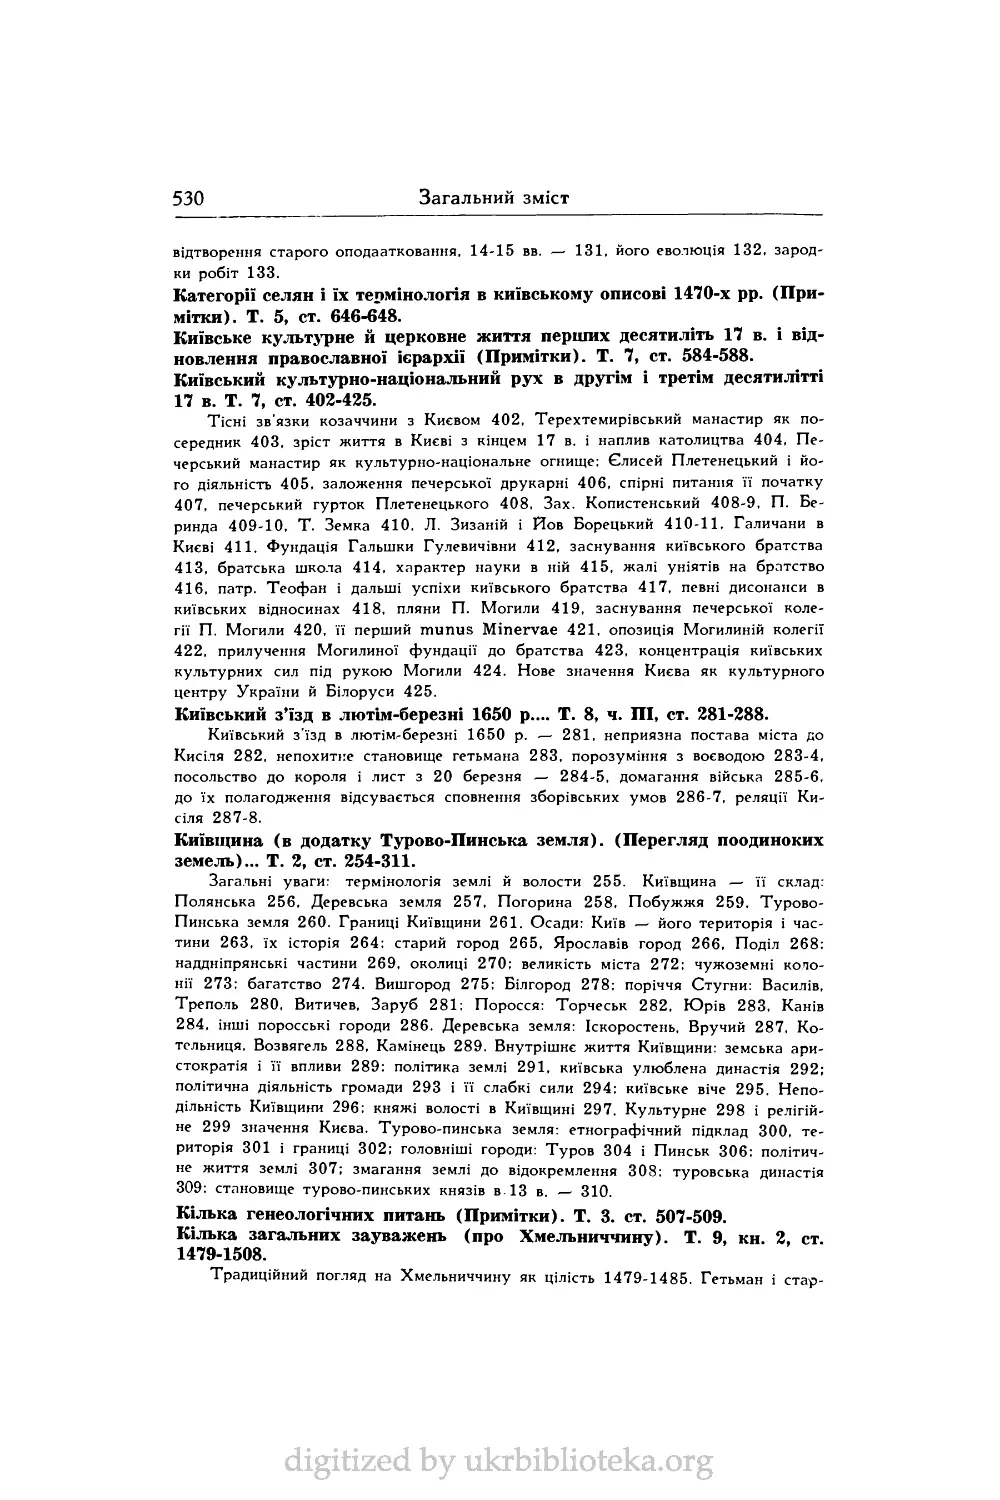 Київський з’їзд в лютім-березні 1650 p.... Т. 8, ч. ПІ, ст. 281-288.